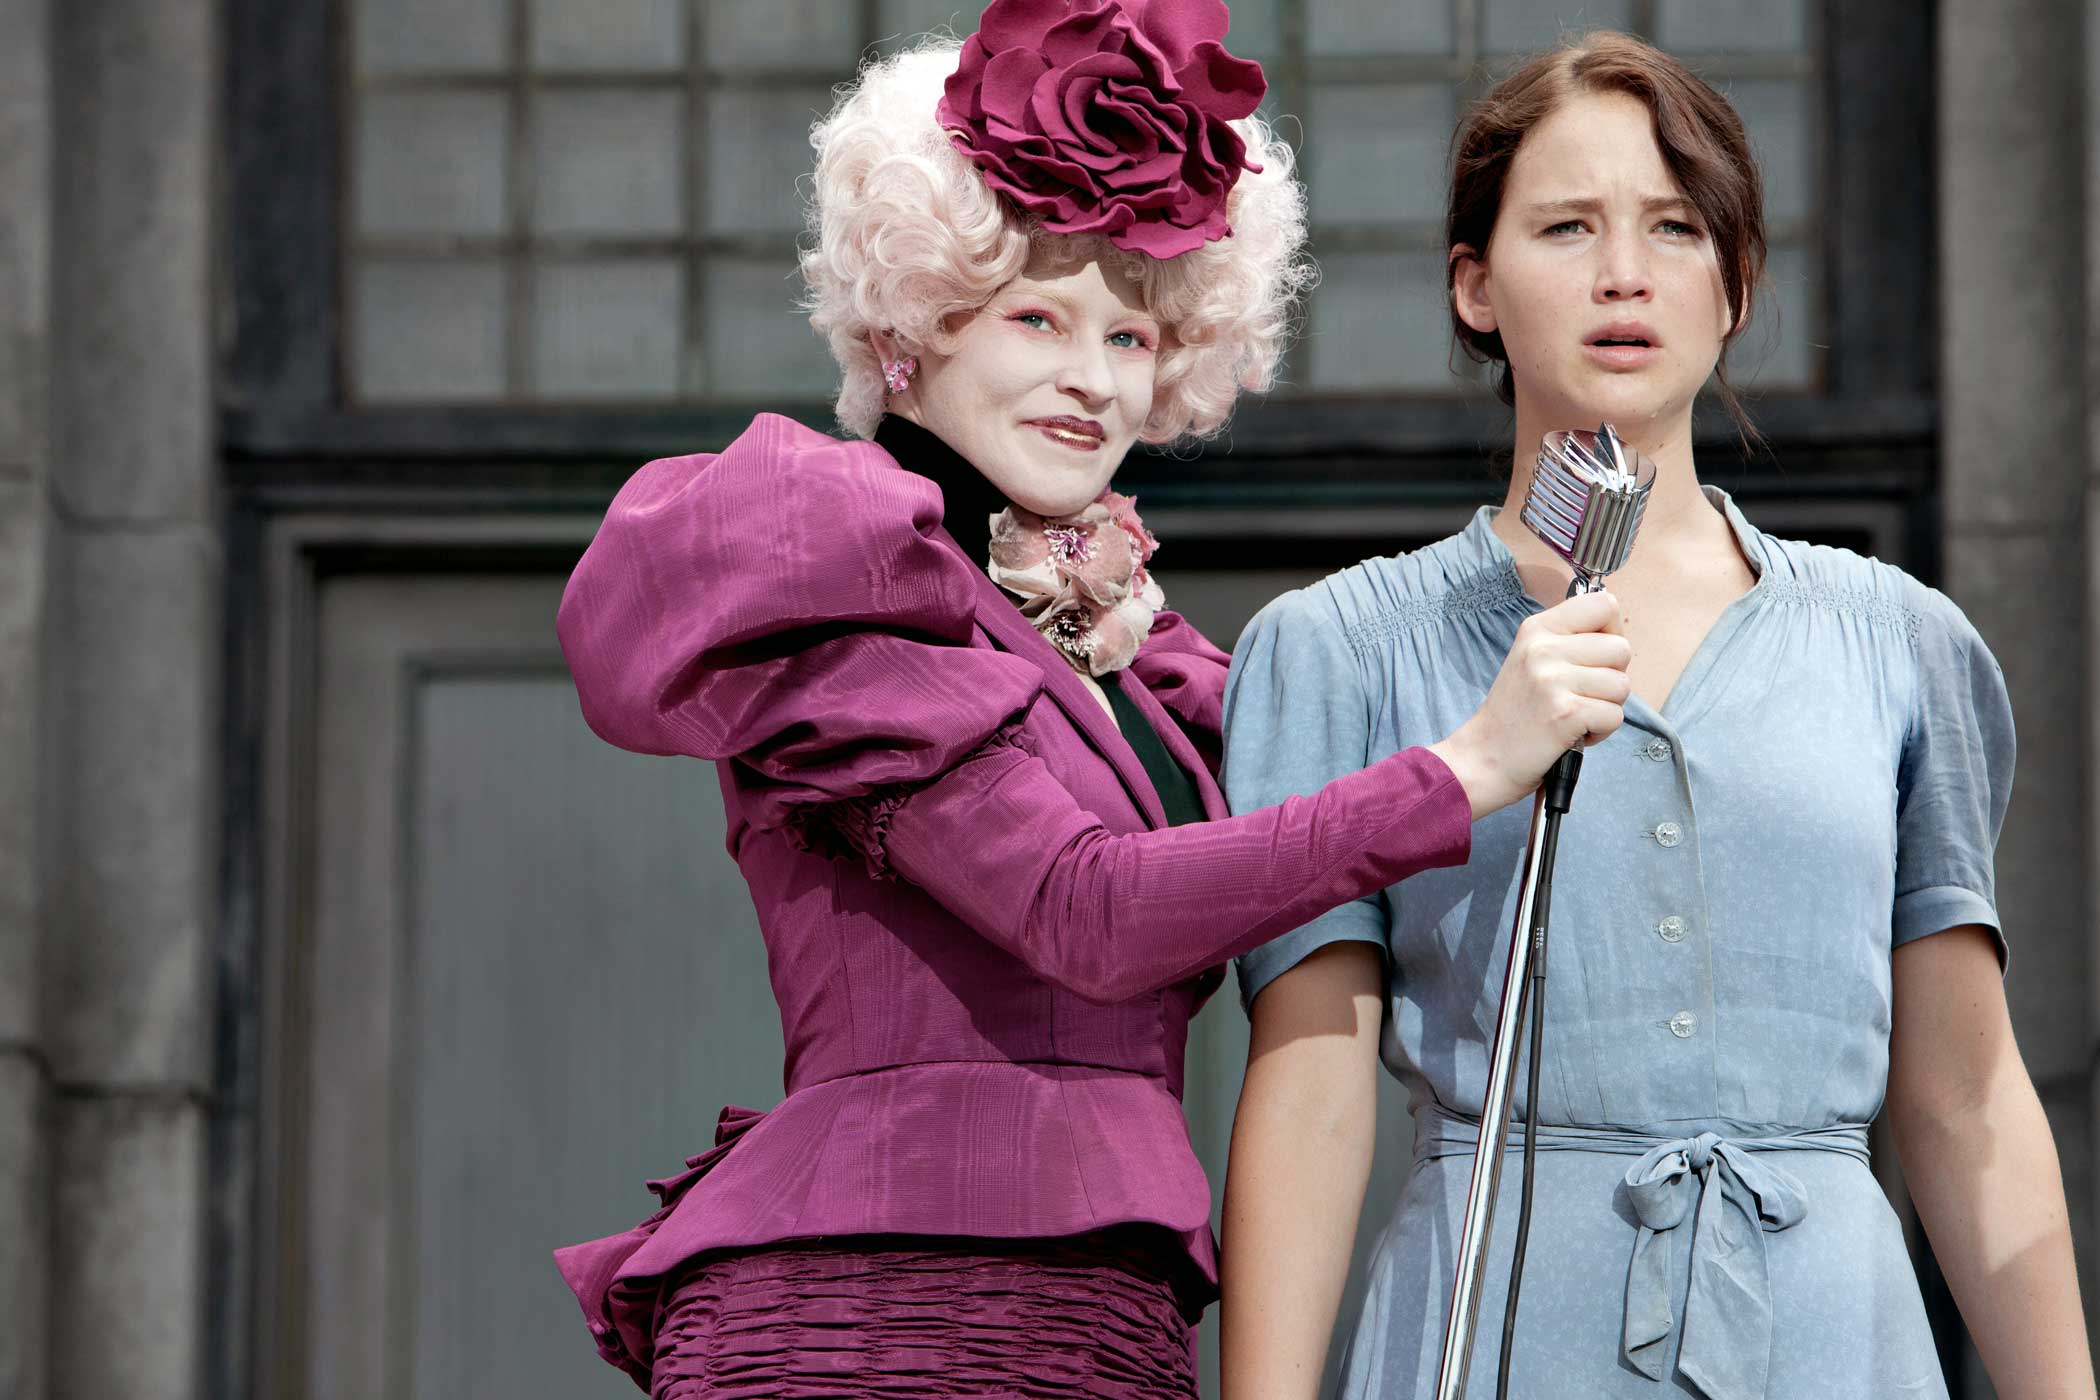 Elizabeth Banks as Effie Trinket and Jennifer Lawrence as Katniss Everdeen in The Hunger Games, 2012.